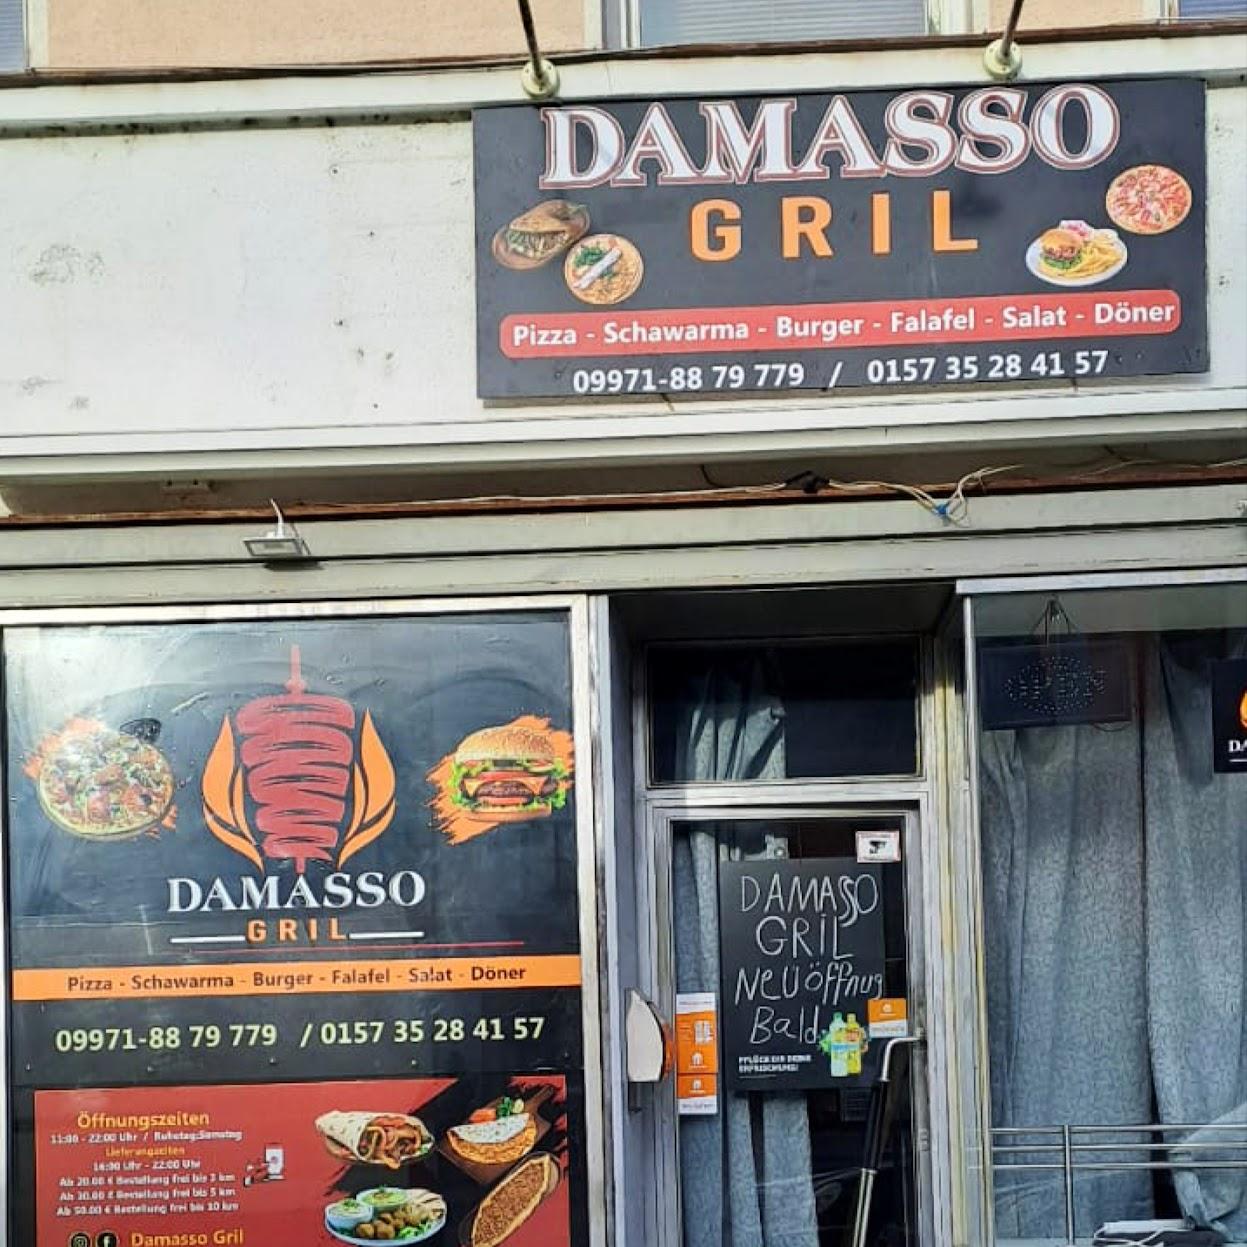 Restaurant "Damasso Gril" in Cham